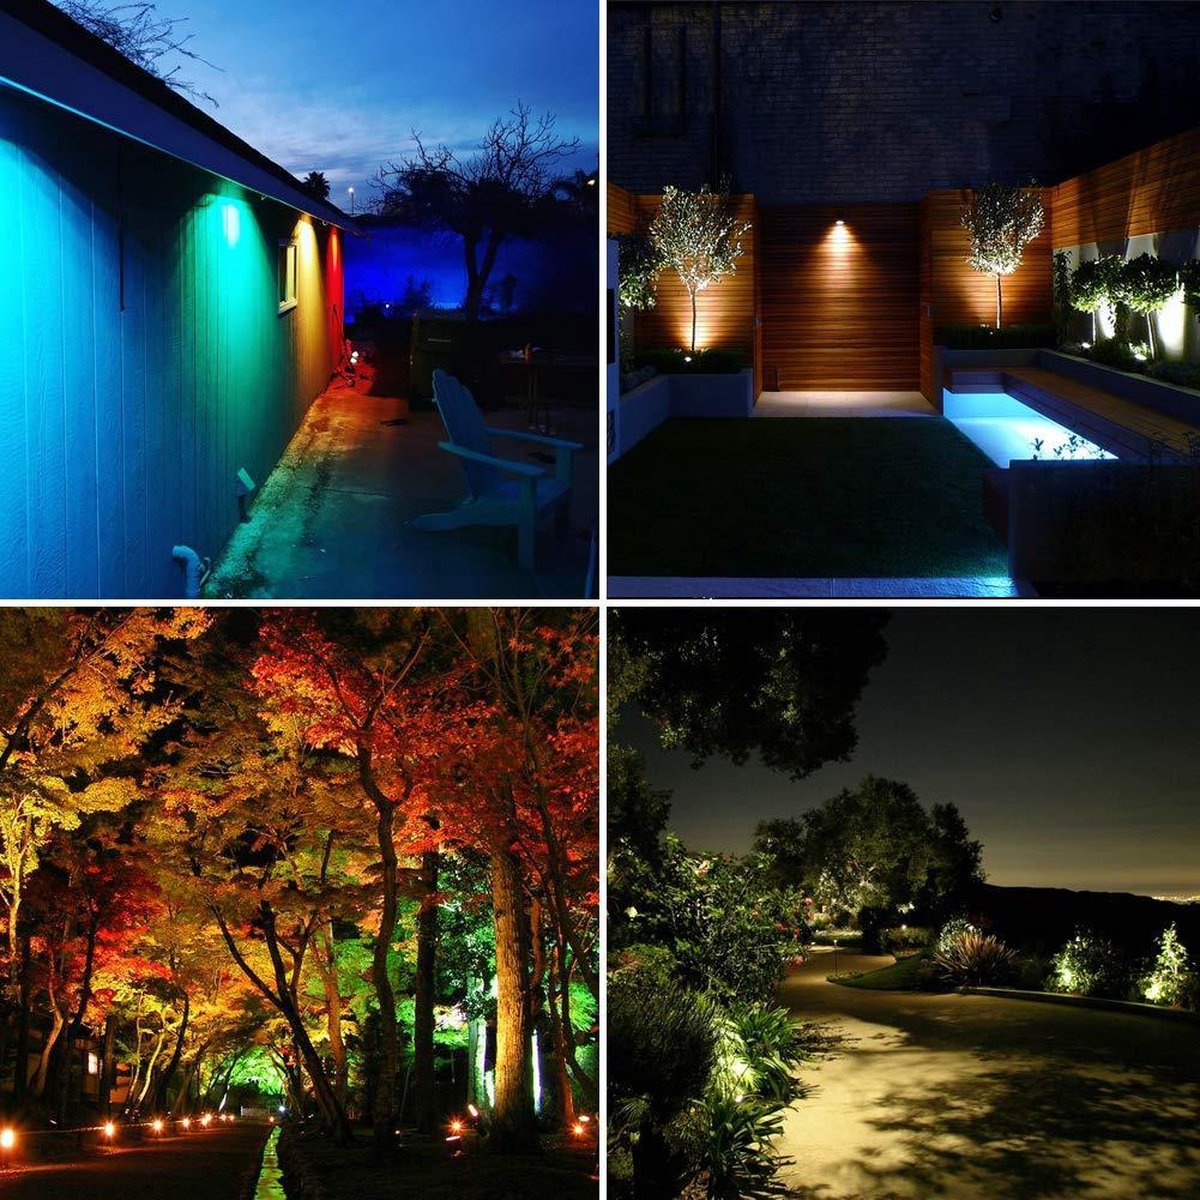 Éclairage de Jardin,Spot LED Extérieur de Jardin Azhien avec